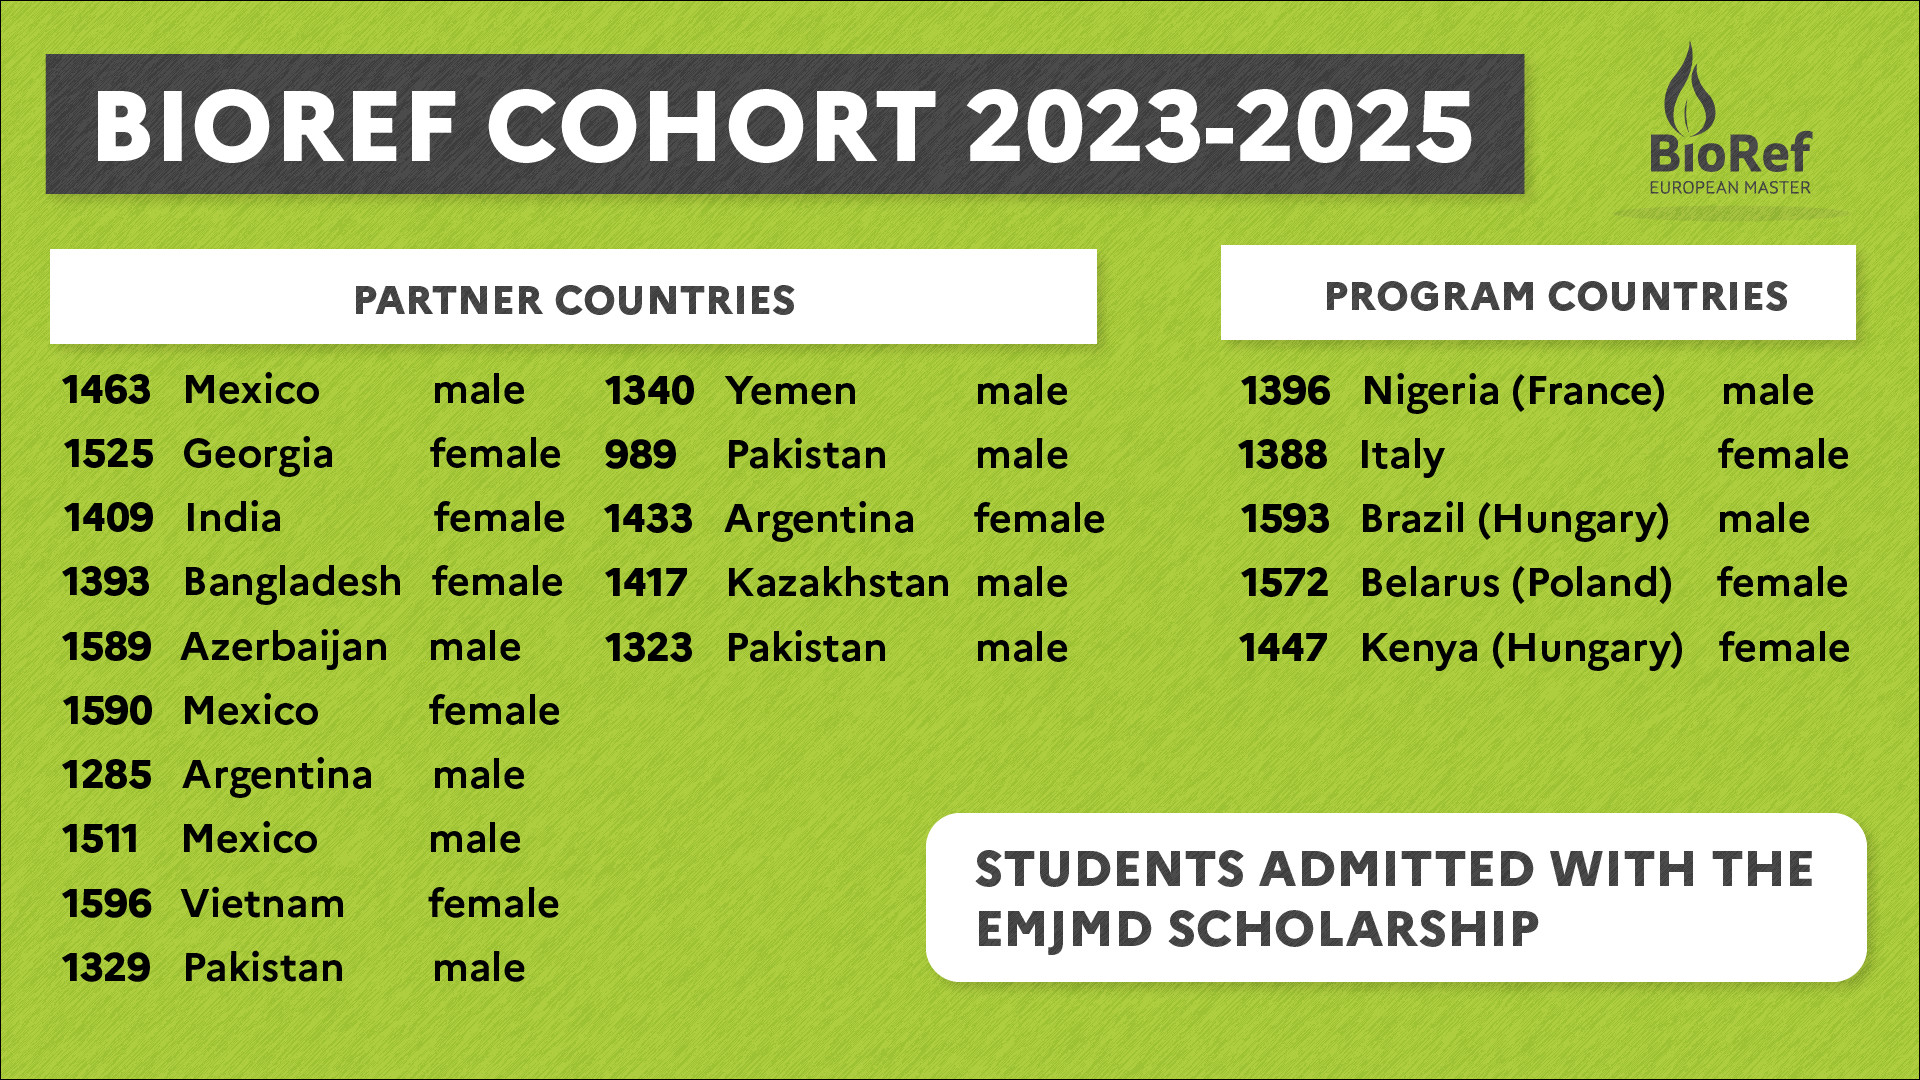 BIOREF COHORT 2023-2025: ADMISSION RESULTS